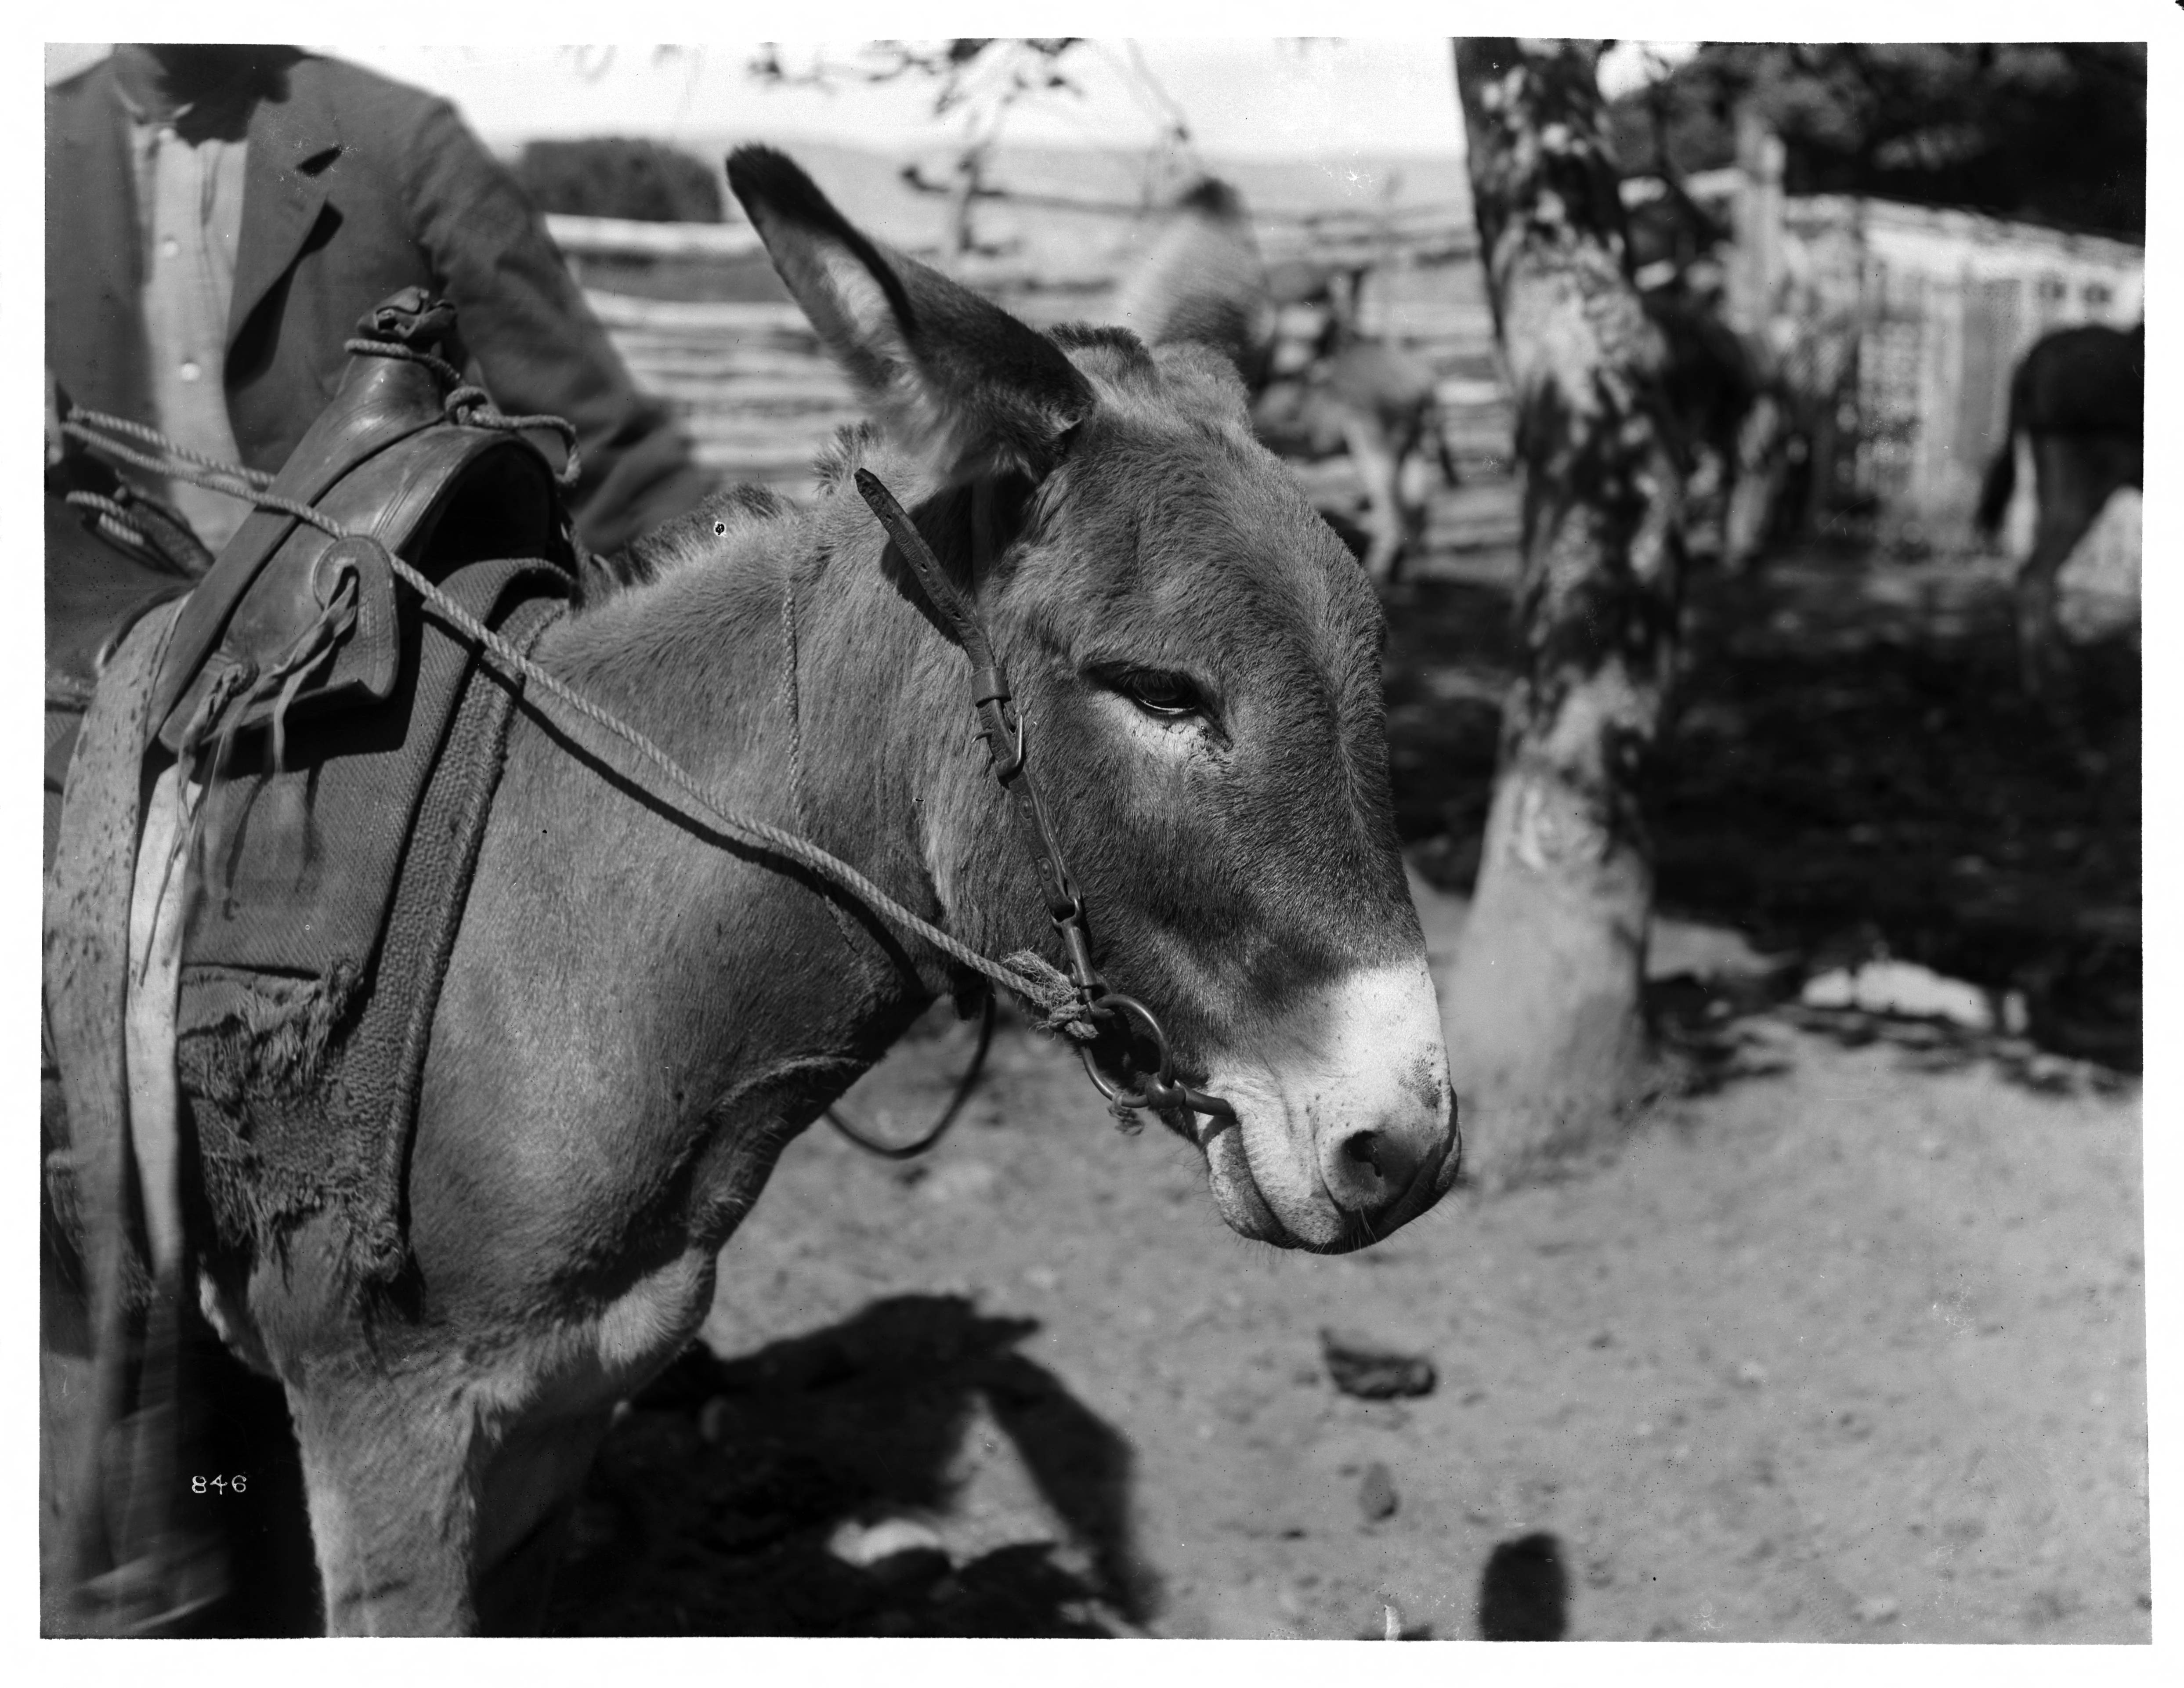 Close-up of a mule, 1900 (CHS-846)